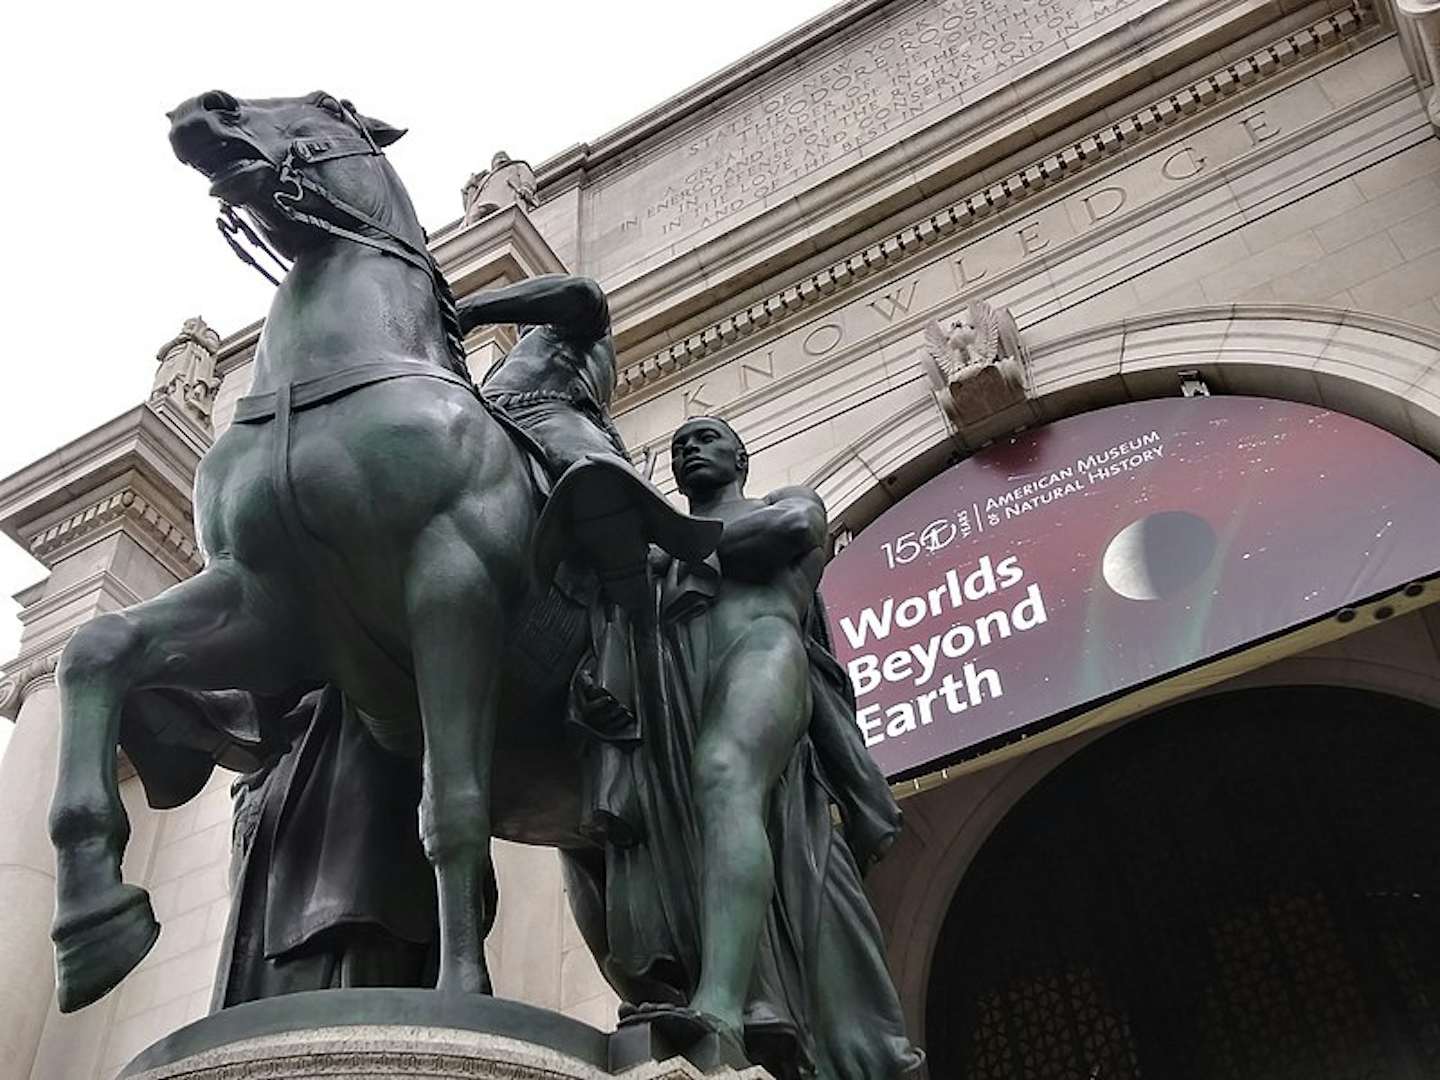 アメリカ自然史博物館がセオドア ルーズベルト騎馬像を撤去へ 黒人と先住民の描写を問題視 美術手帖